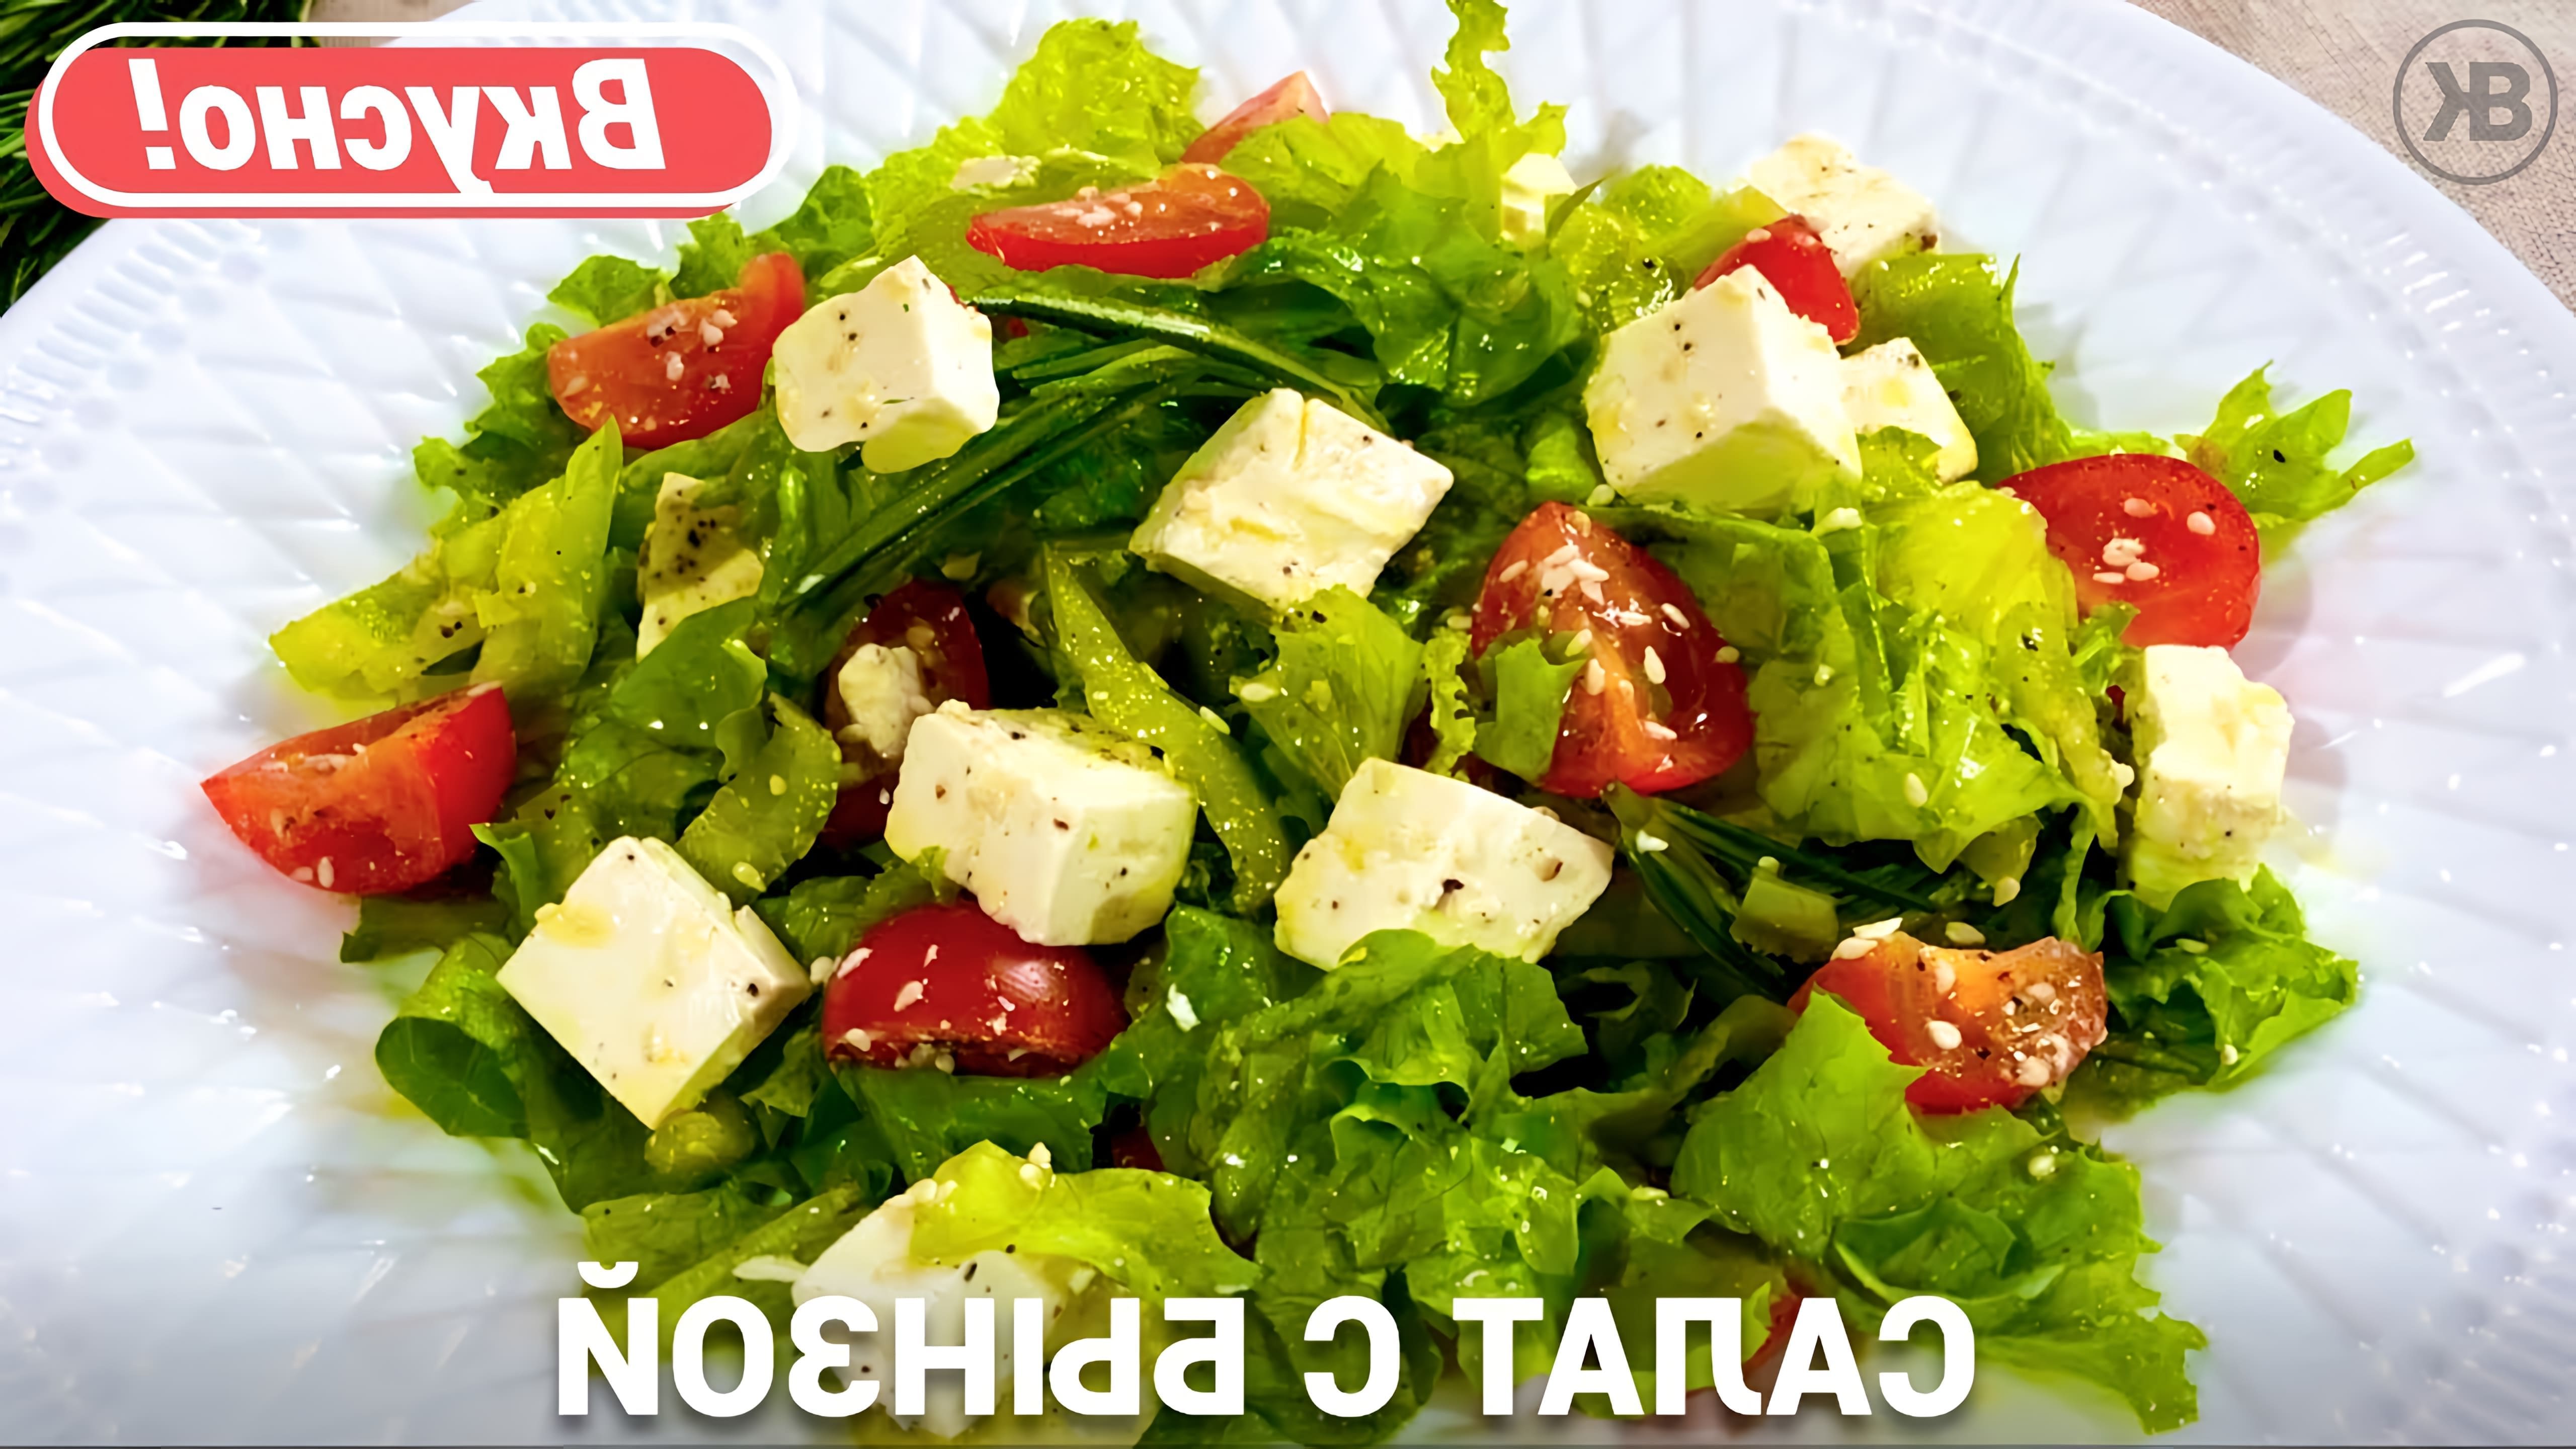 В этом видео демонстрируется простой рецепт приготовления витаминного салата с брынзой